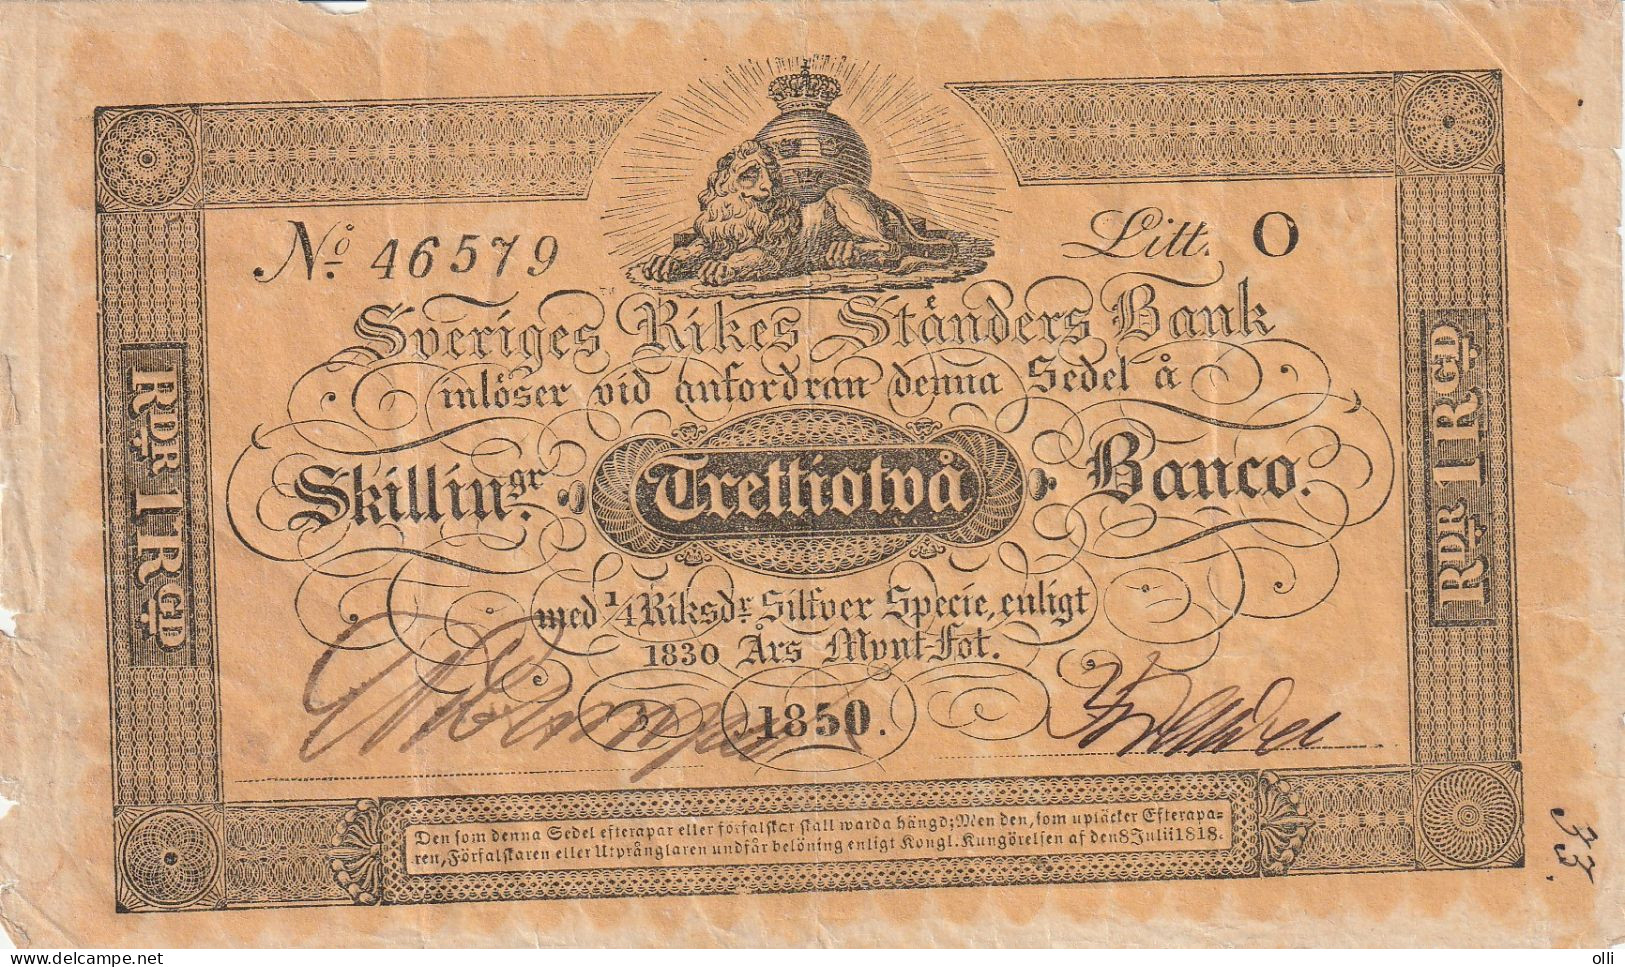 SWEDEN  32 Skilling Banco 1852. - Zweden